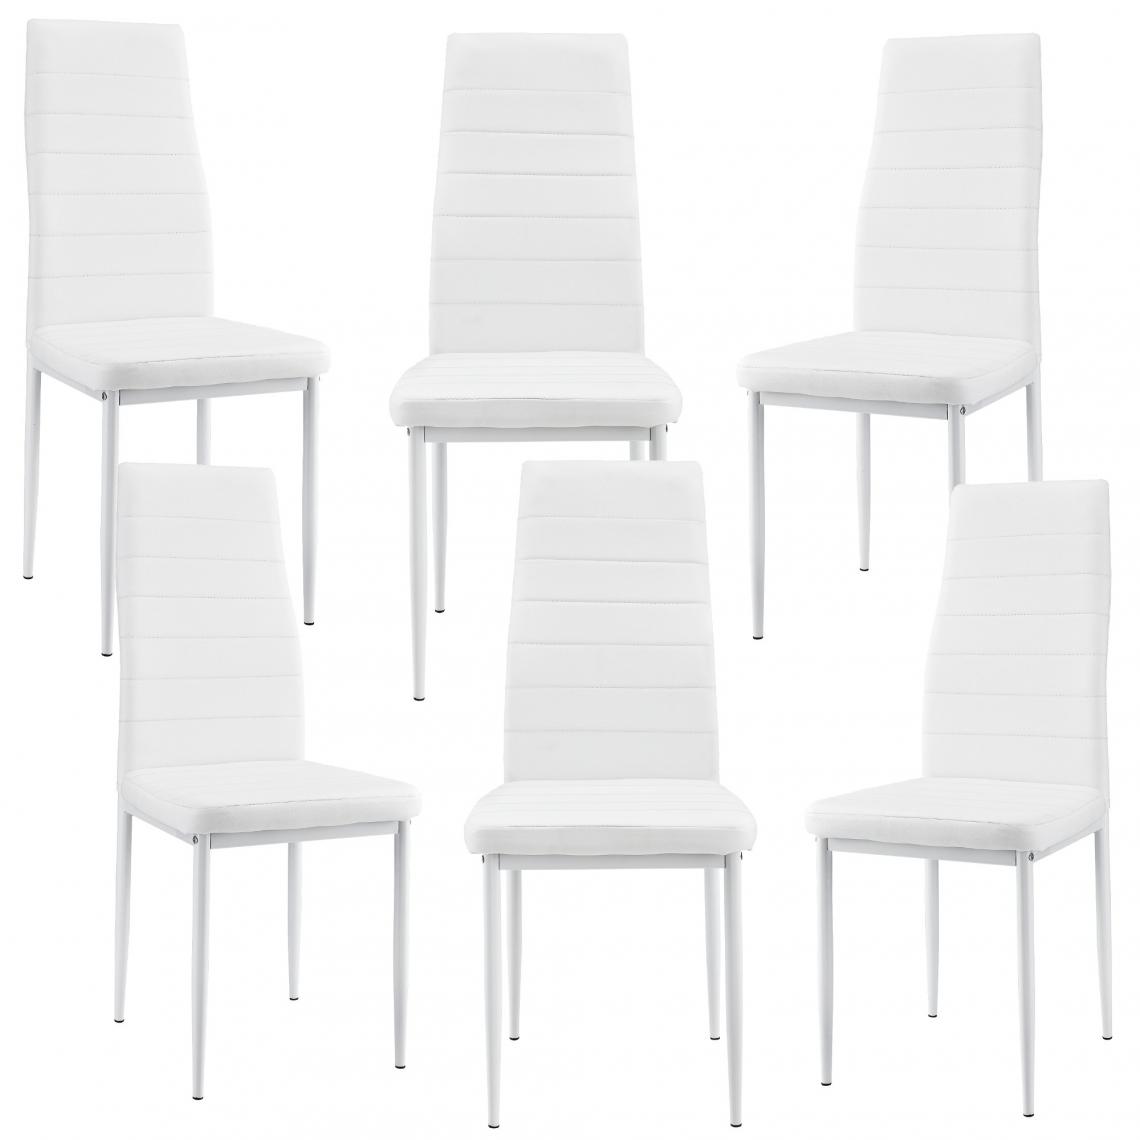 Decoshop26 - 6 x Chaises de salle à manger blanc avec rembourrage cuir synthétique 03_0000285 - Chaises